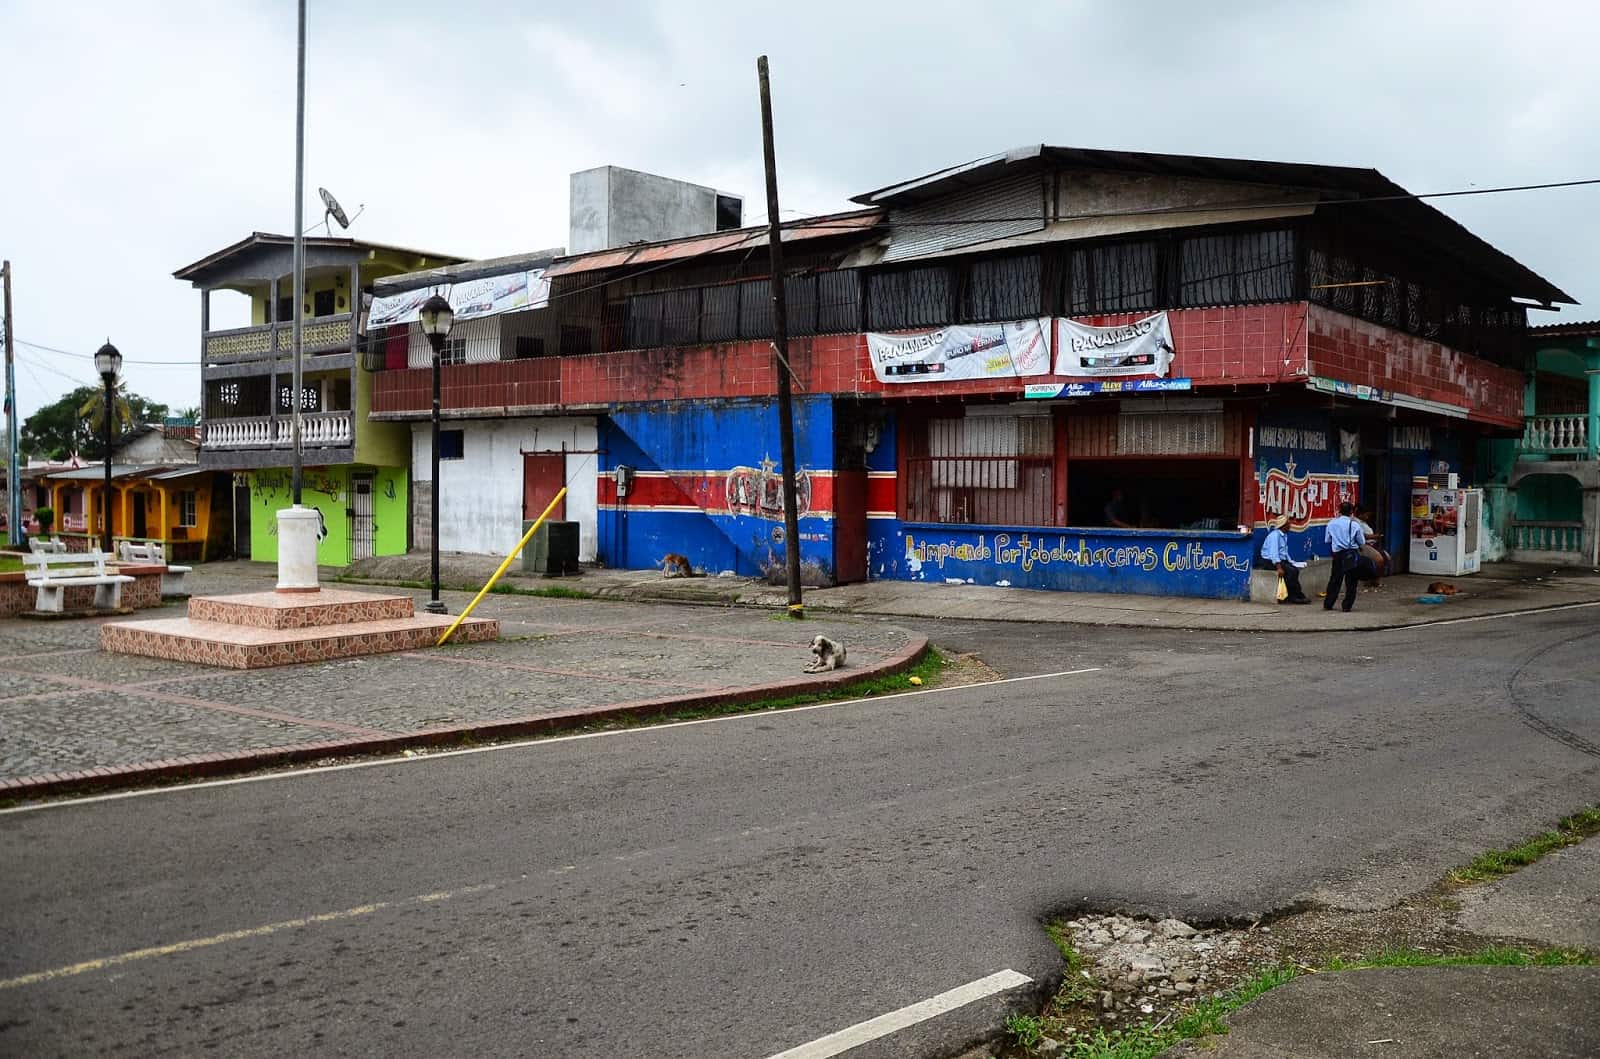 Run down buildings in Portobelo, Panama